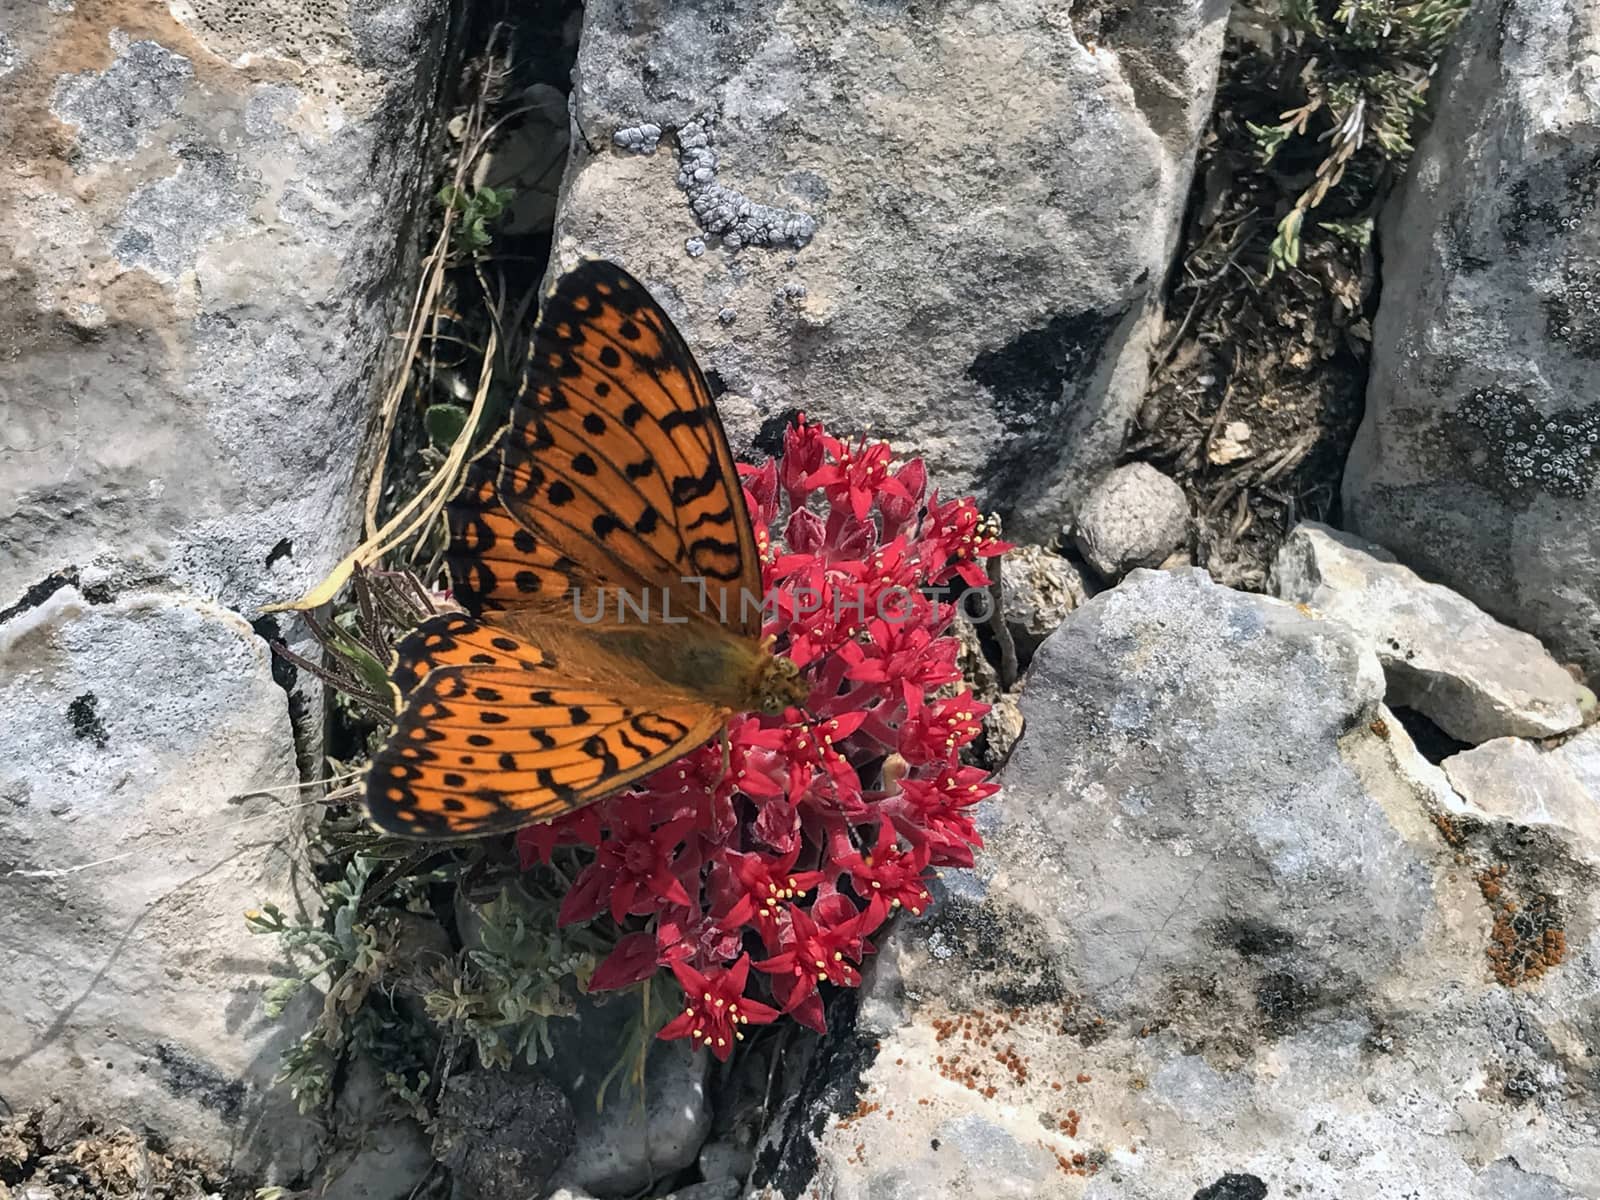 Orange butterfly on bloody flower by crazymedia007